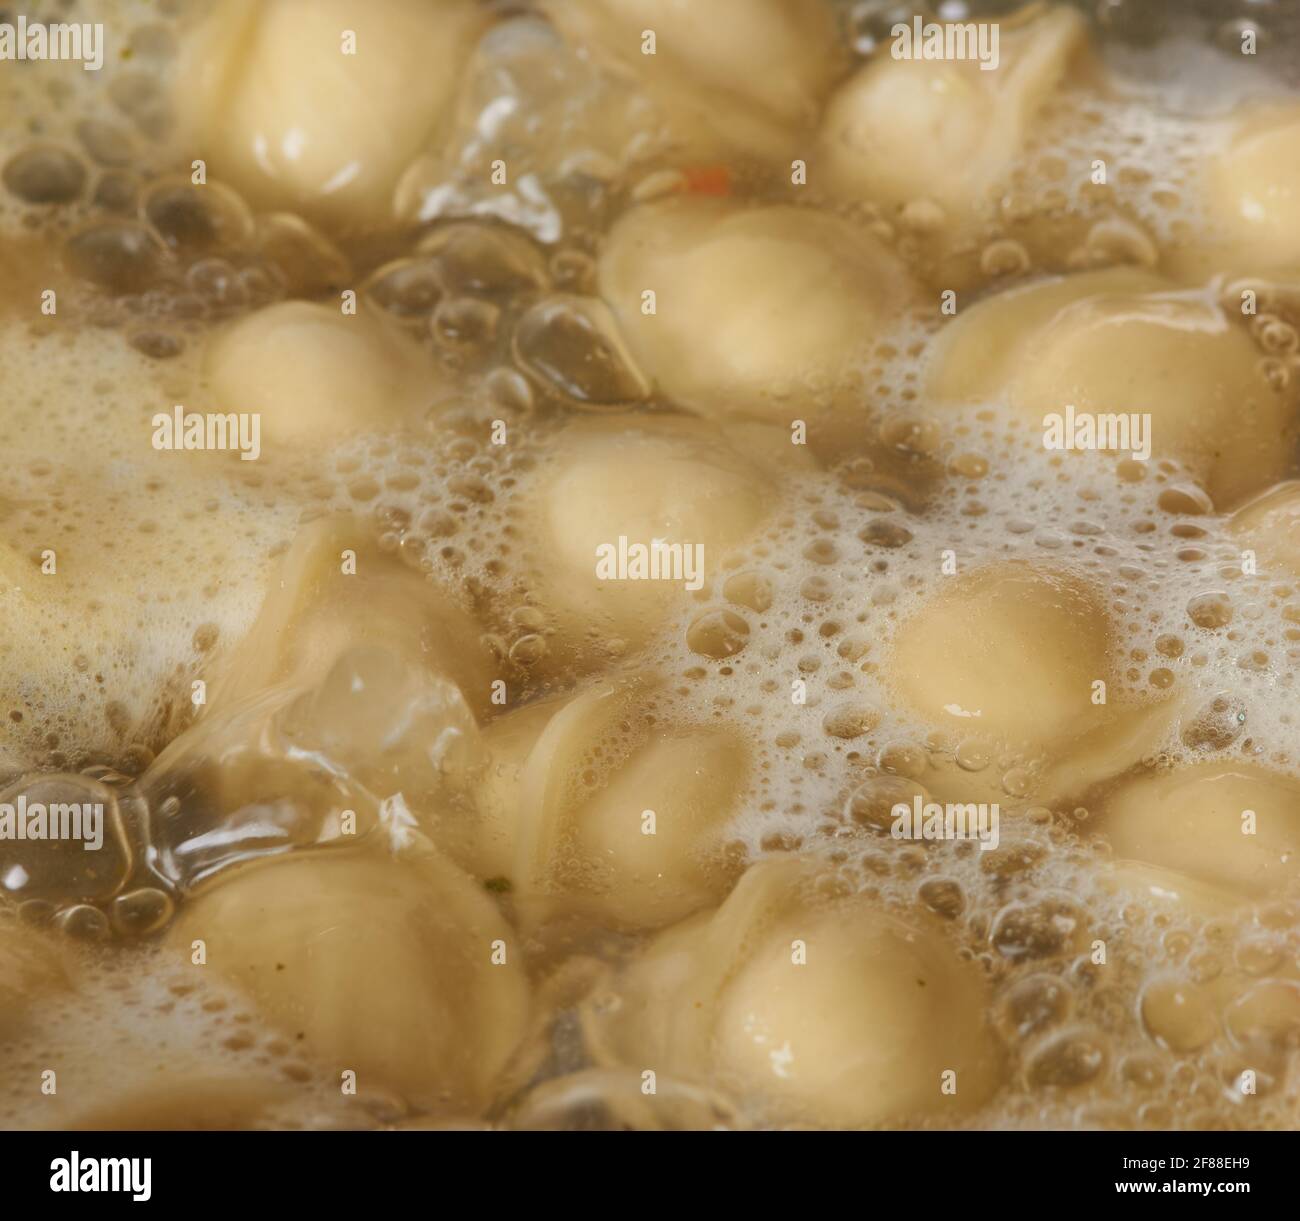 Köstliche Knödel werden in kochendem Wasser gekocht Stockfoto